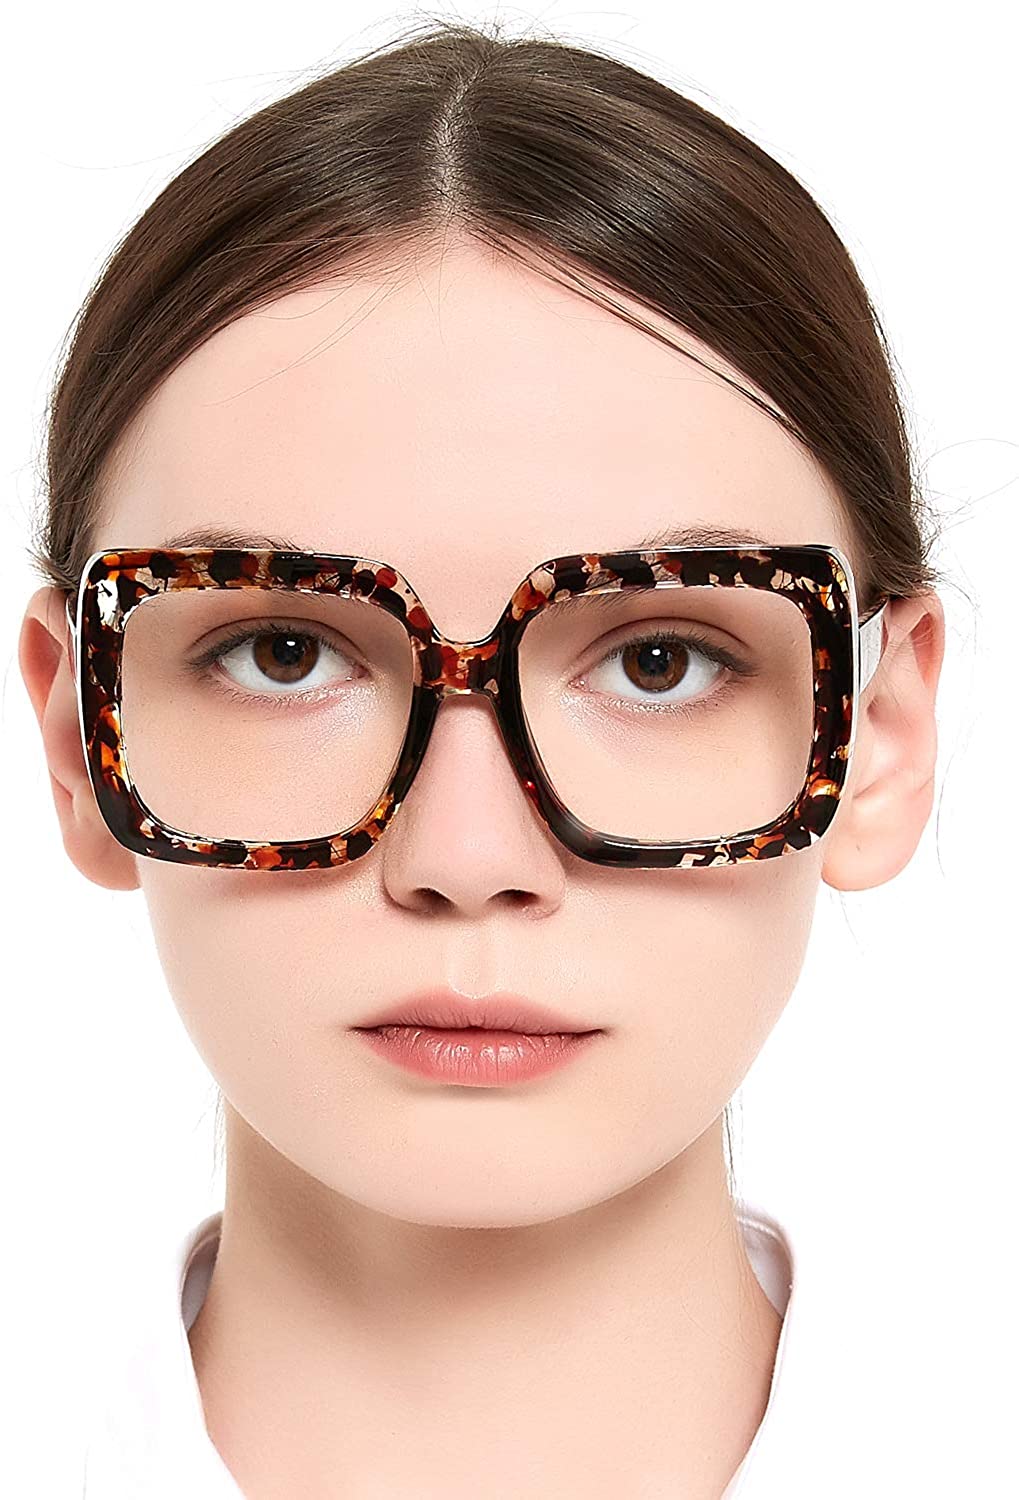 OCCI CHIARI Reading Glasses For Women Oversized Reader